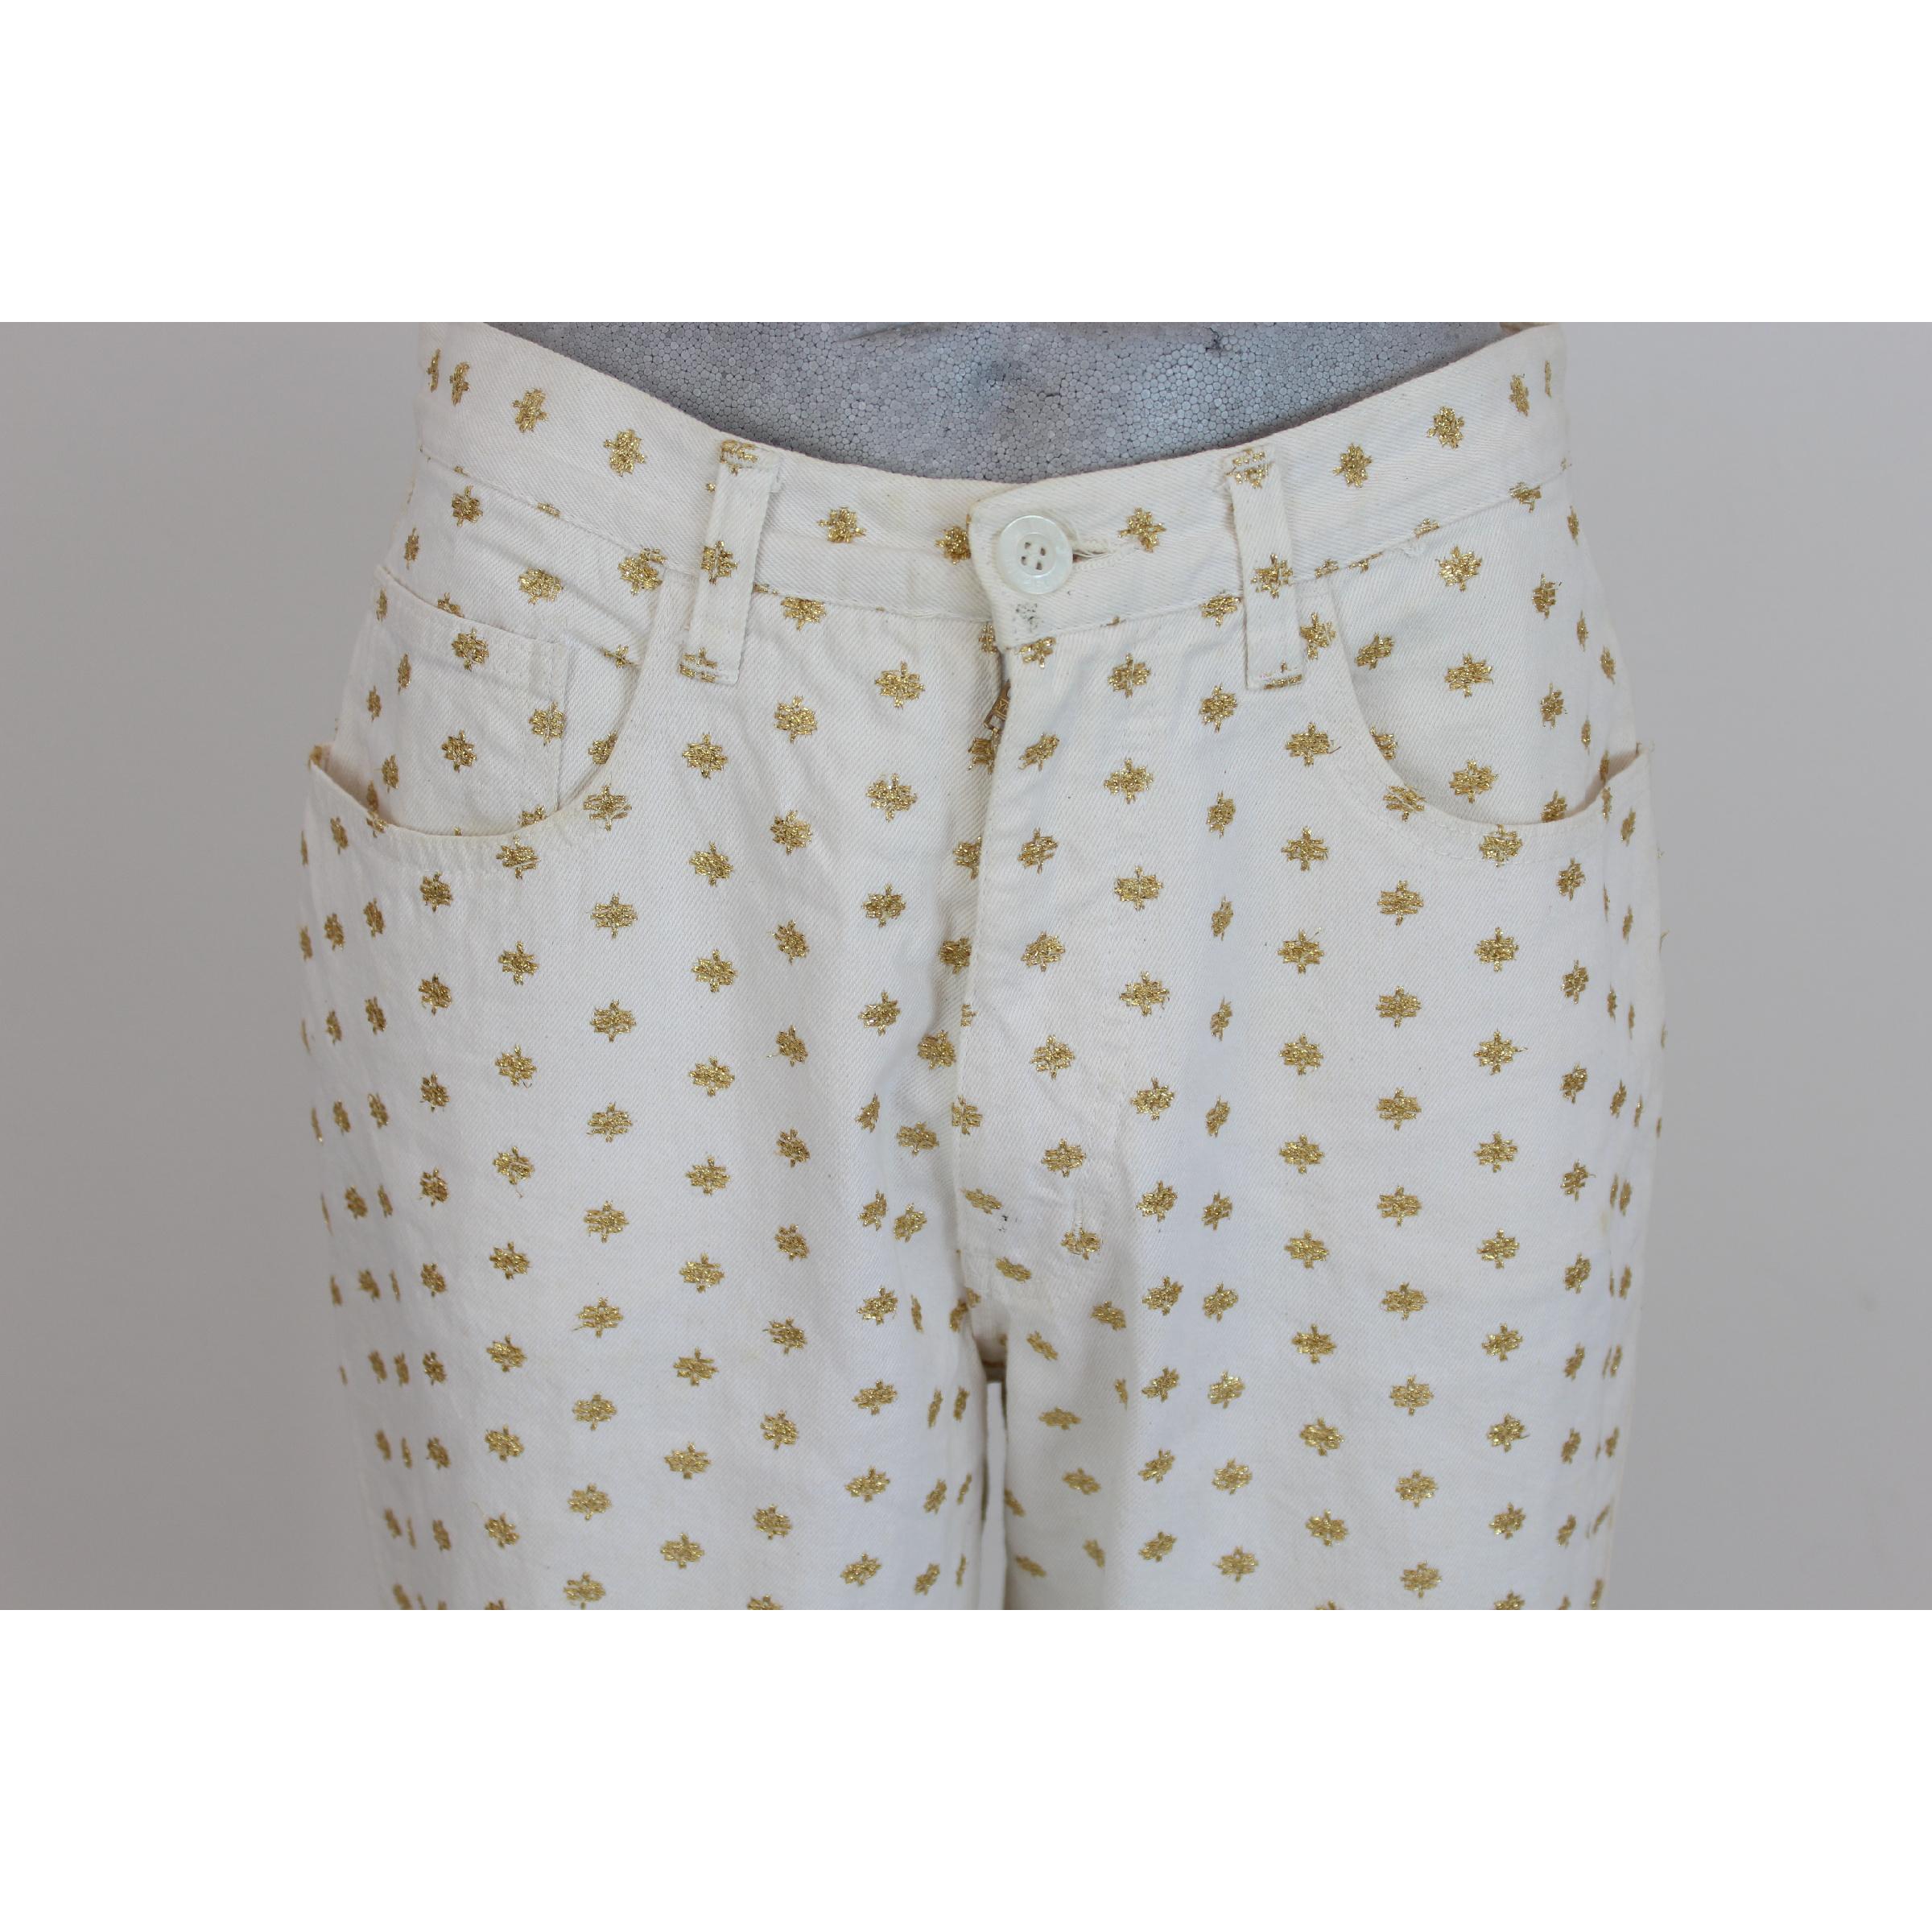 Pantalon Moschino comme un jean, blanc avec des motifs dorés, 100% coton. Poches sur les côtés. Bon état vintage. Fabriquées en Italie.

Taille 46 It 14 Us 12 Uk

Longueur du pantalon : 103 cm
Taille du pantalon : 36 cm
Ourlet : 15 cm